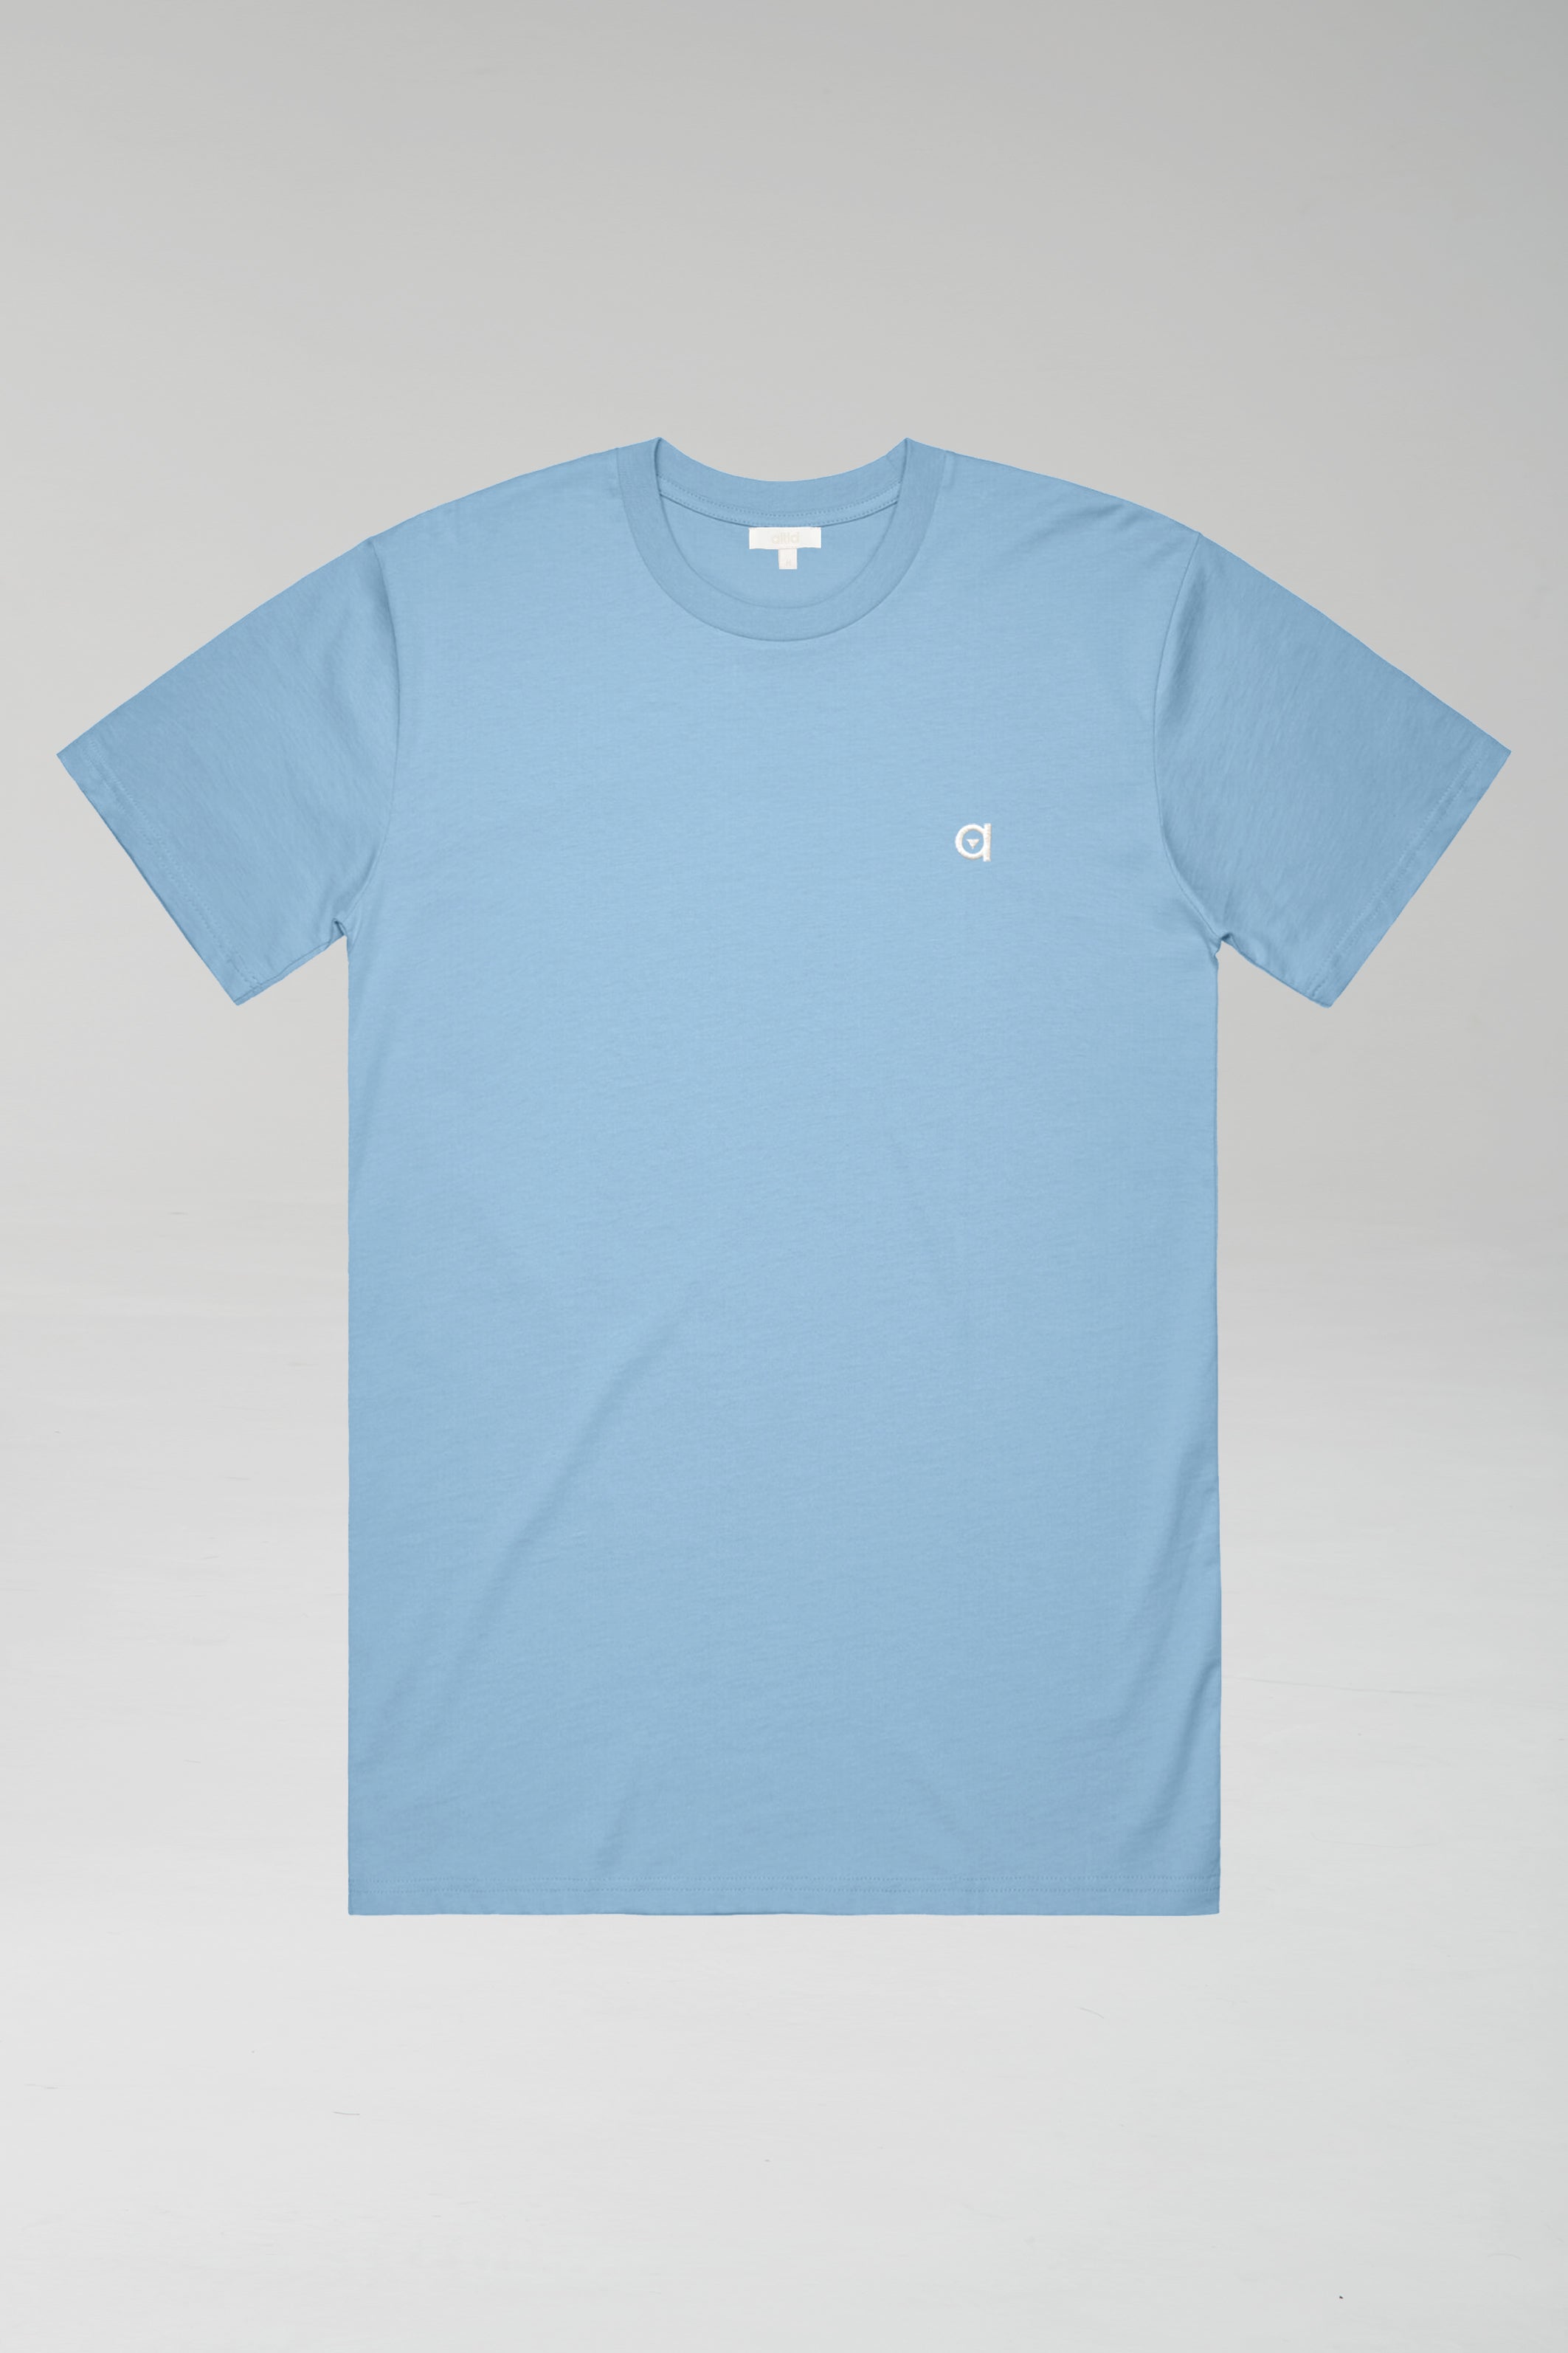 sky blue low carbon t-shirt